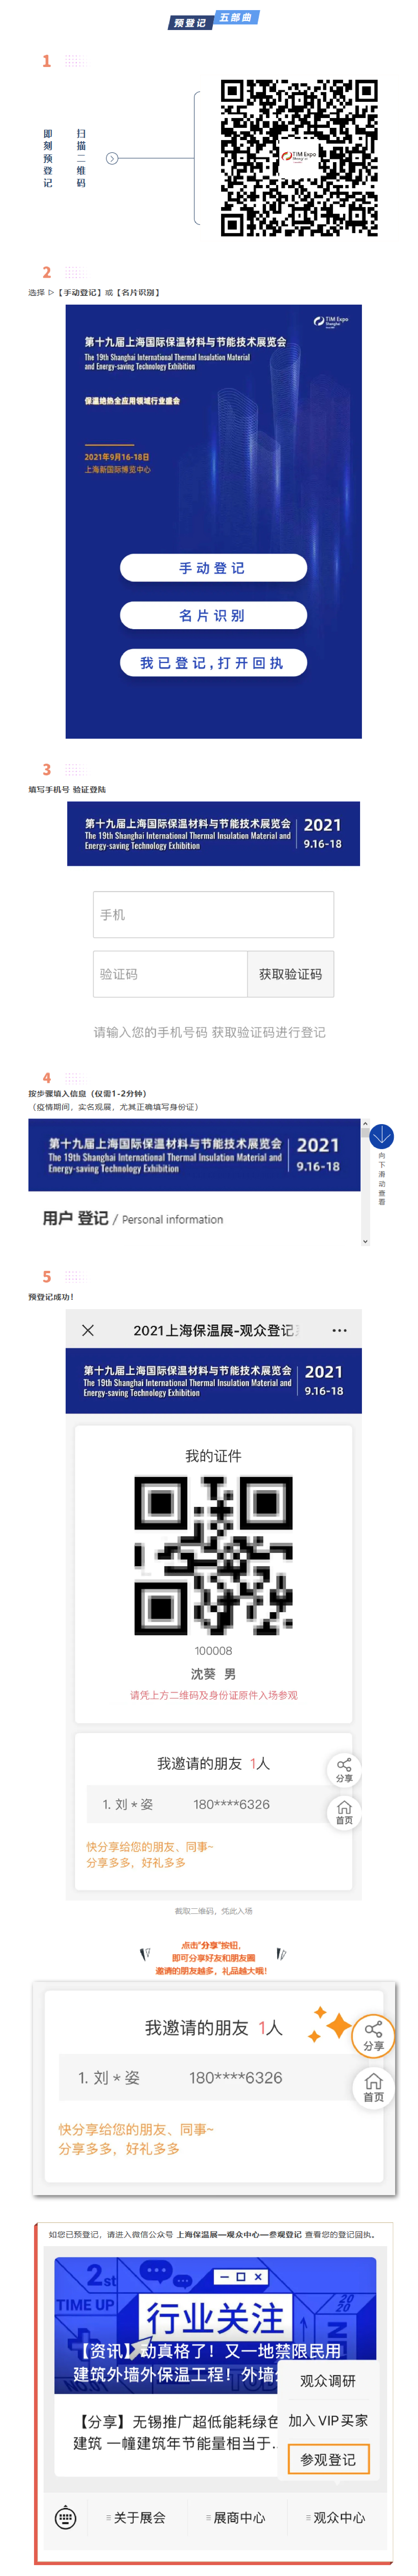 2021上海保温展-预登记上线啦(图1)